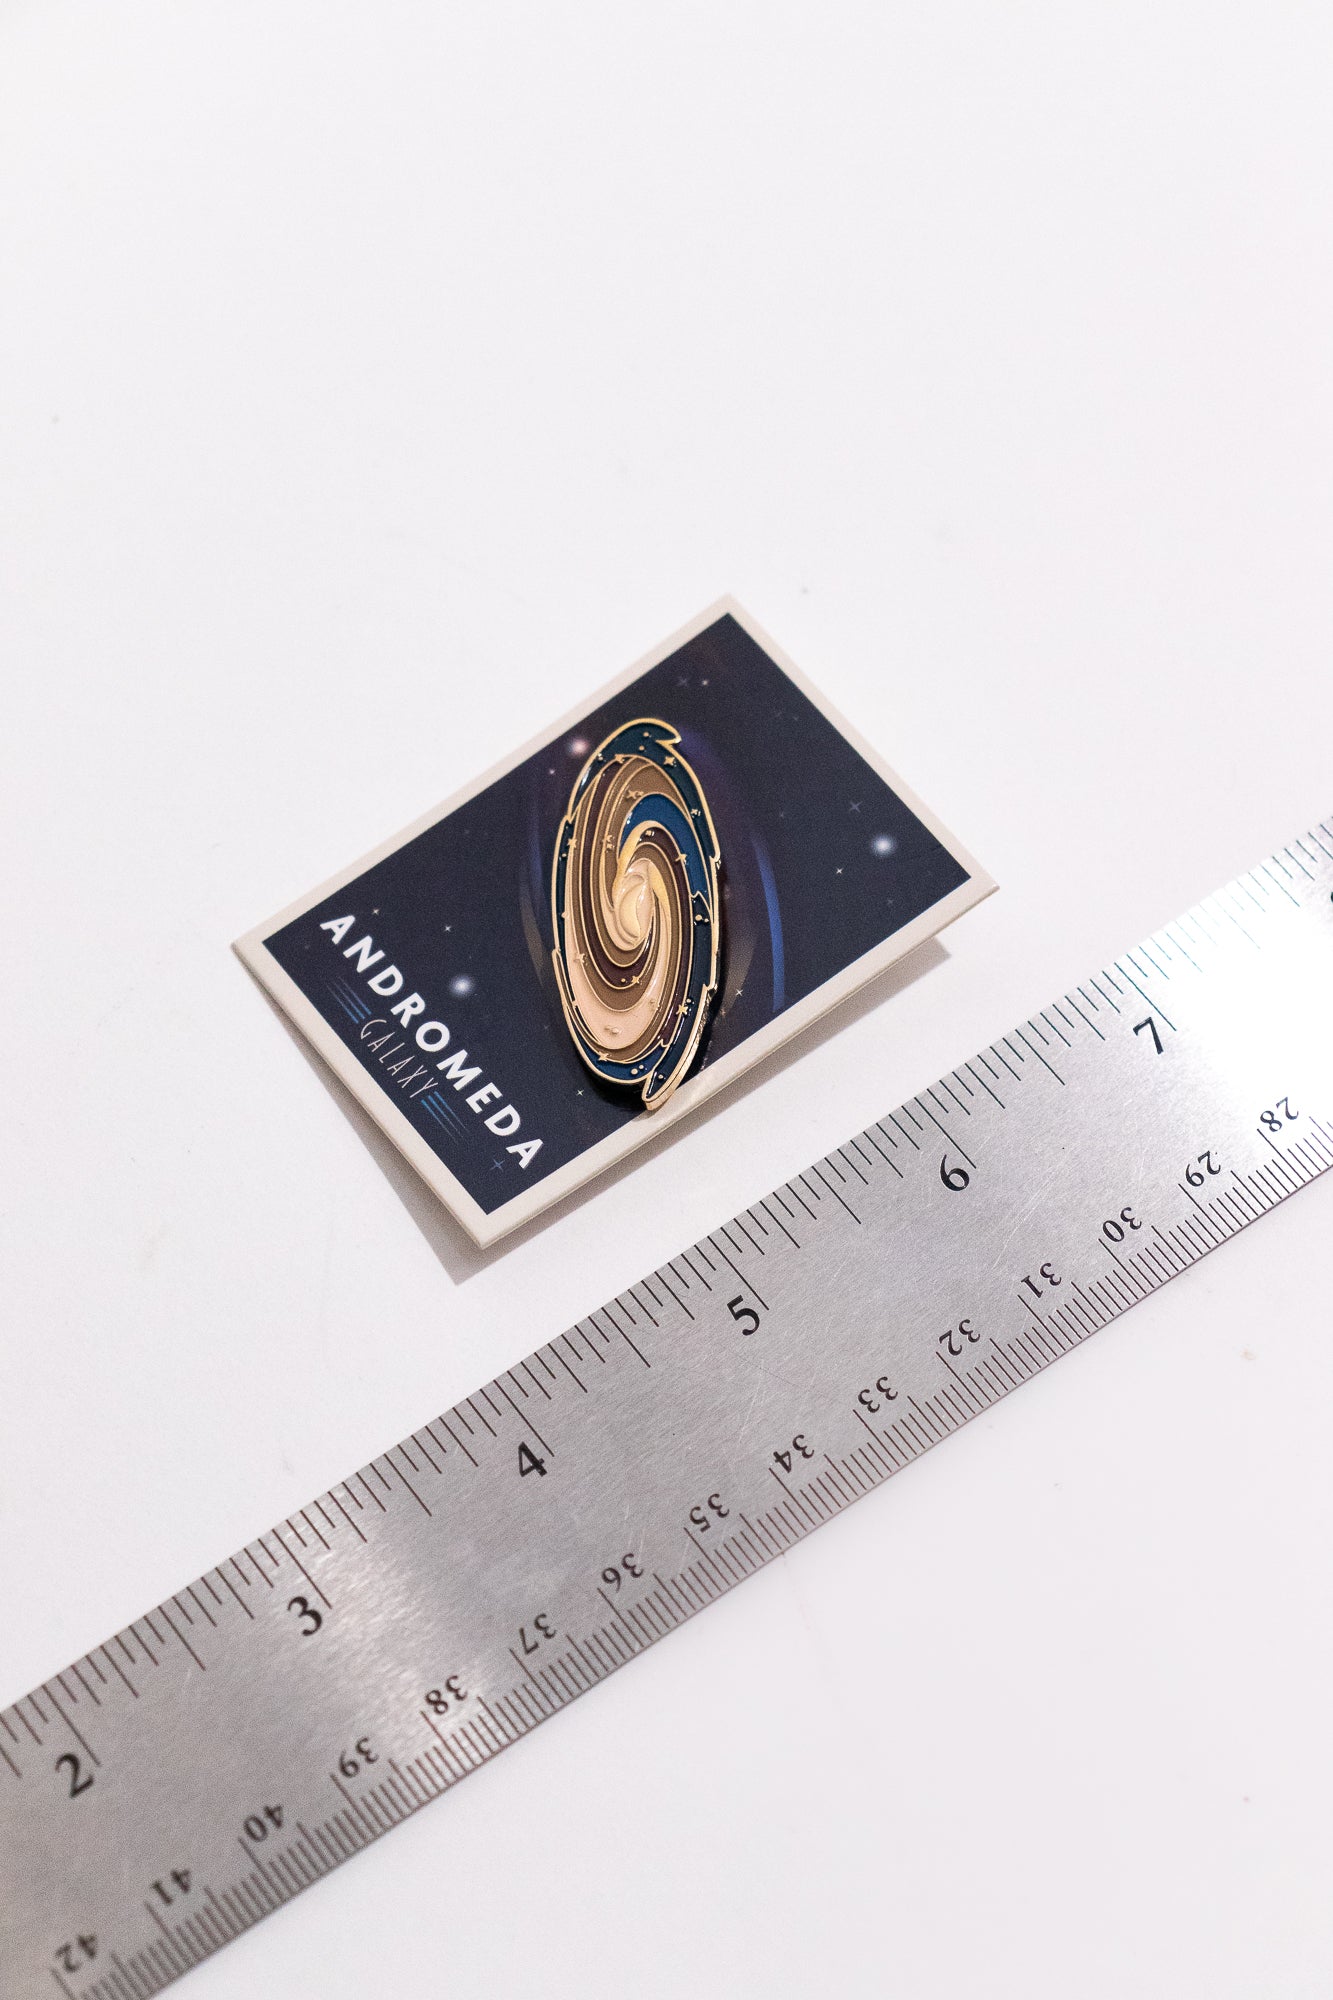 Andromeda Galaxy Pin